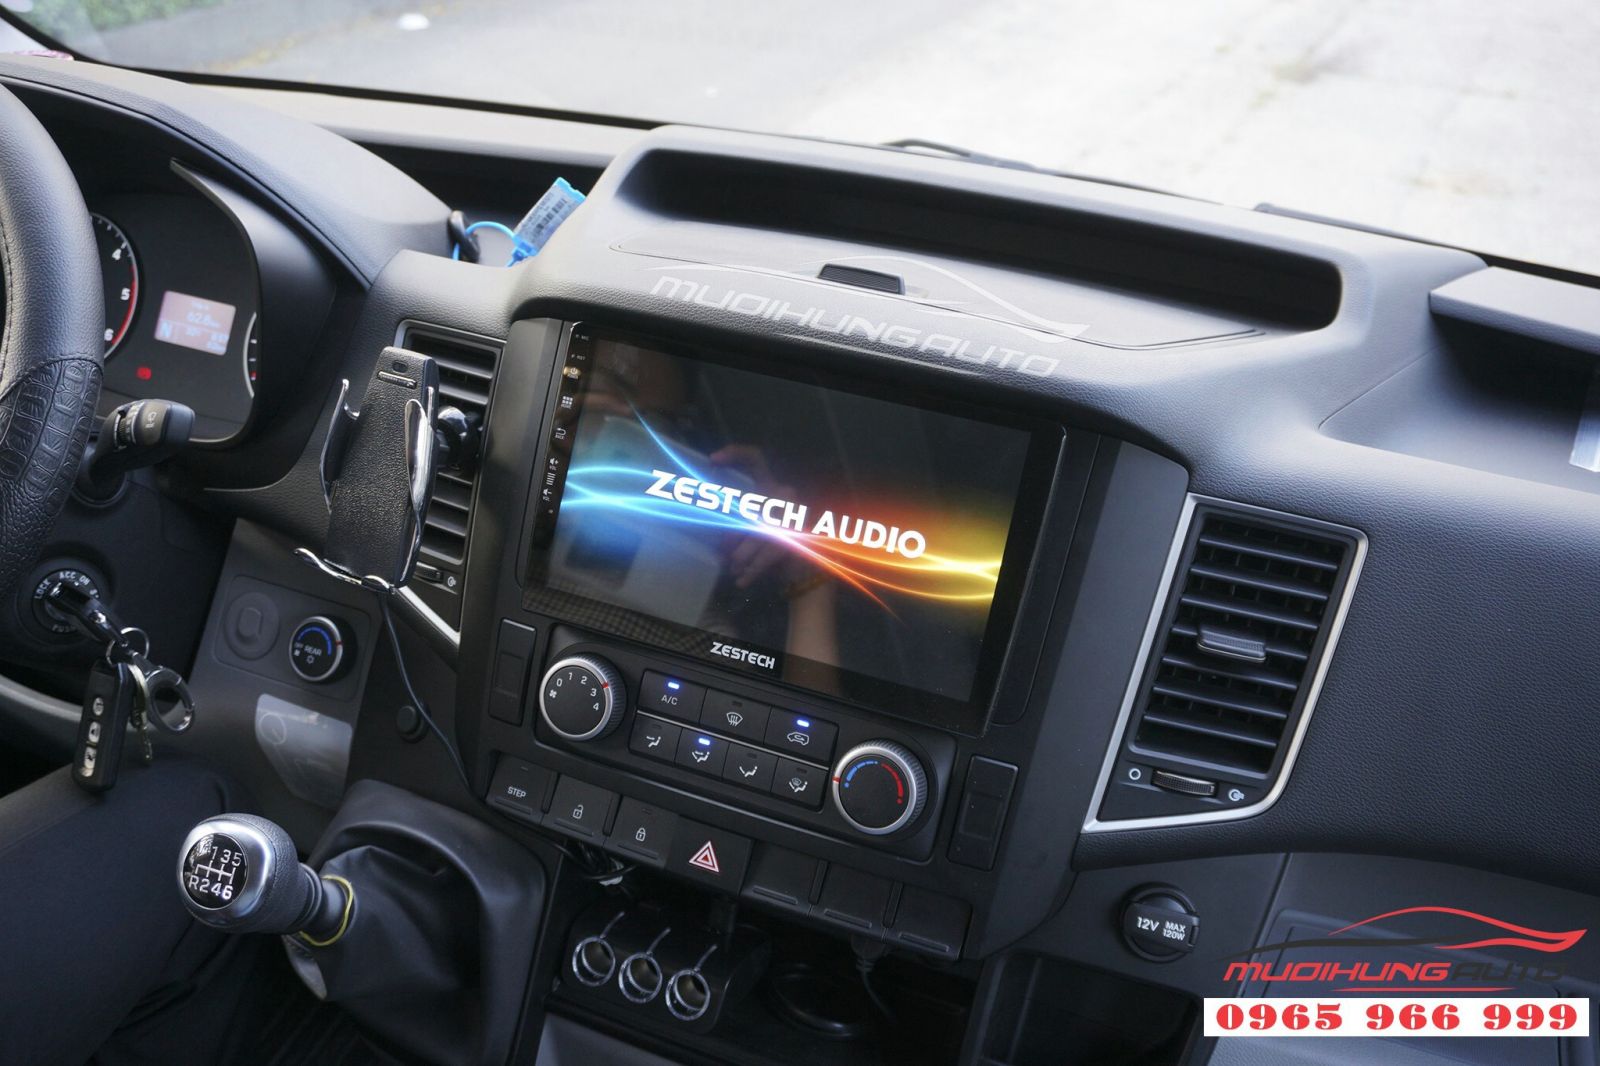  Lắp màn hình DVD Zestech Z500 cho Hyundai Solati 05